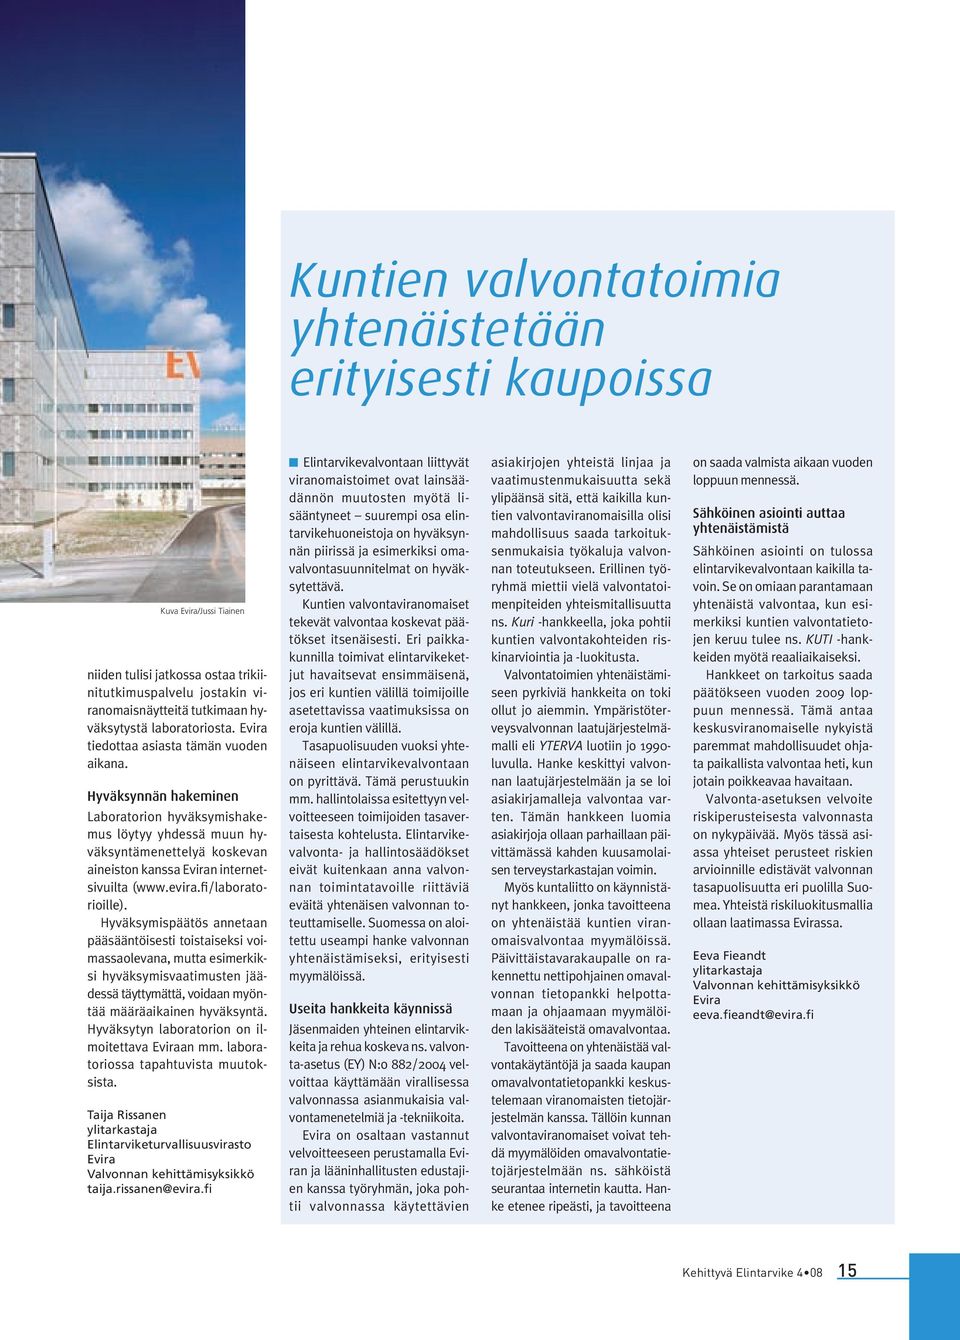 Hyväksynnän hakeminen Laboratorion hyväksymishakemus löytyy yhdessä muun hyväksyntämenettelyä koskevan aineiston kanssa Eviran internetsivuilta (www.evira.fi/laboratorioille).